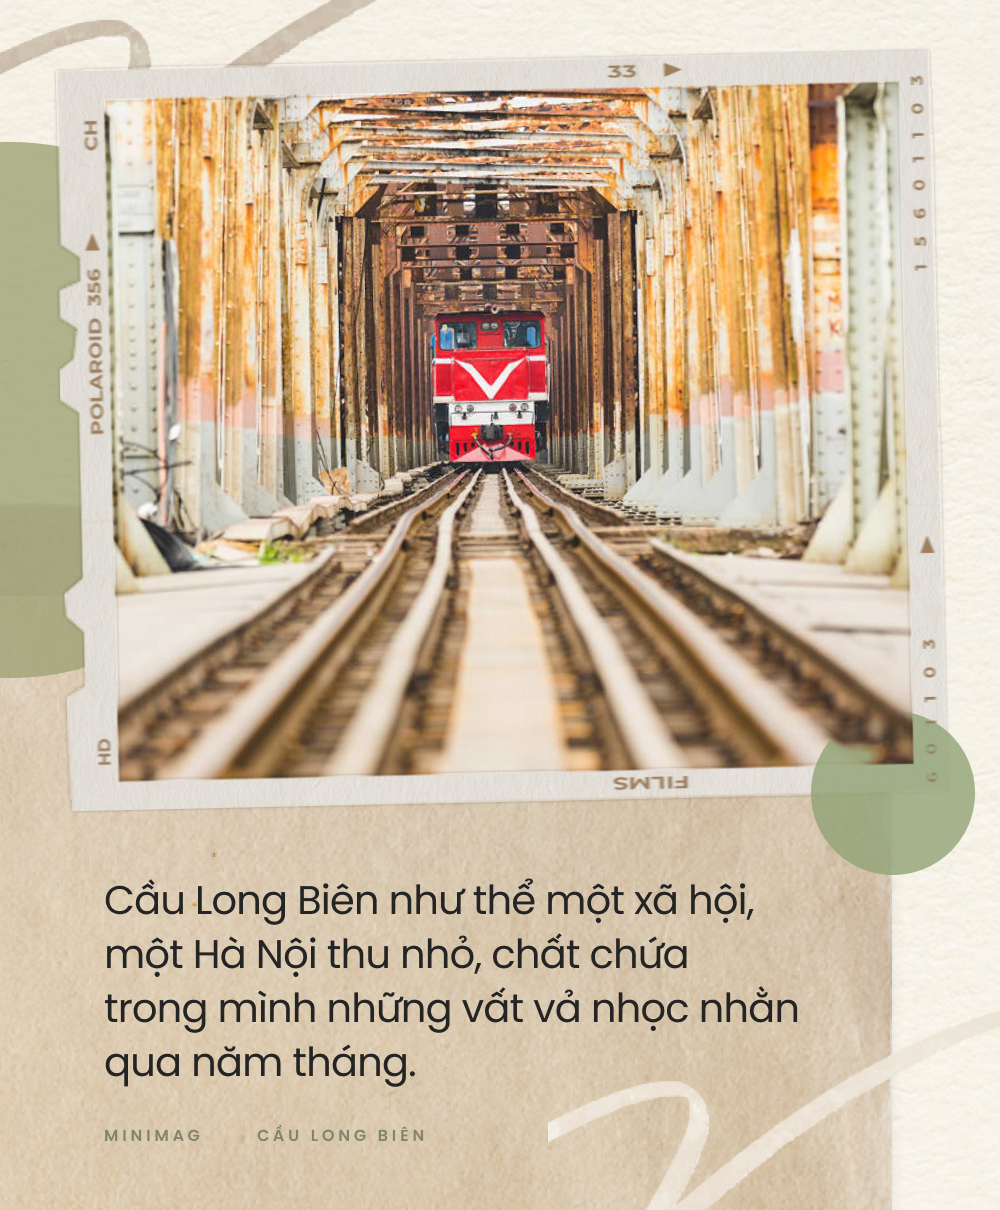 Cầu Long Biên: Kiệt tác nghệ thuật kiến trúc - chứng nhân lịch sử của dân tộc đã đến lúc cần được nghỉ ngơi - Ảnh 17.